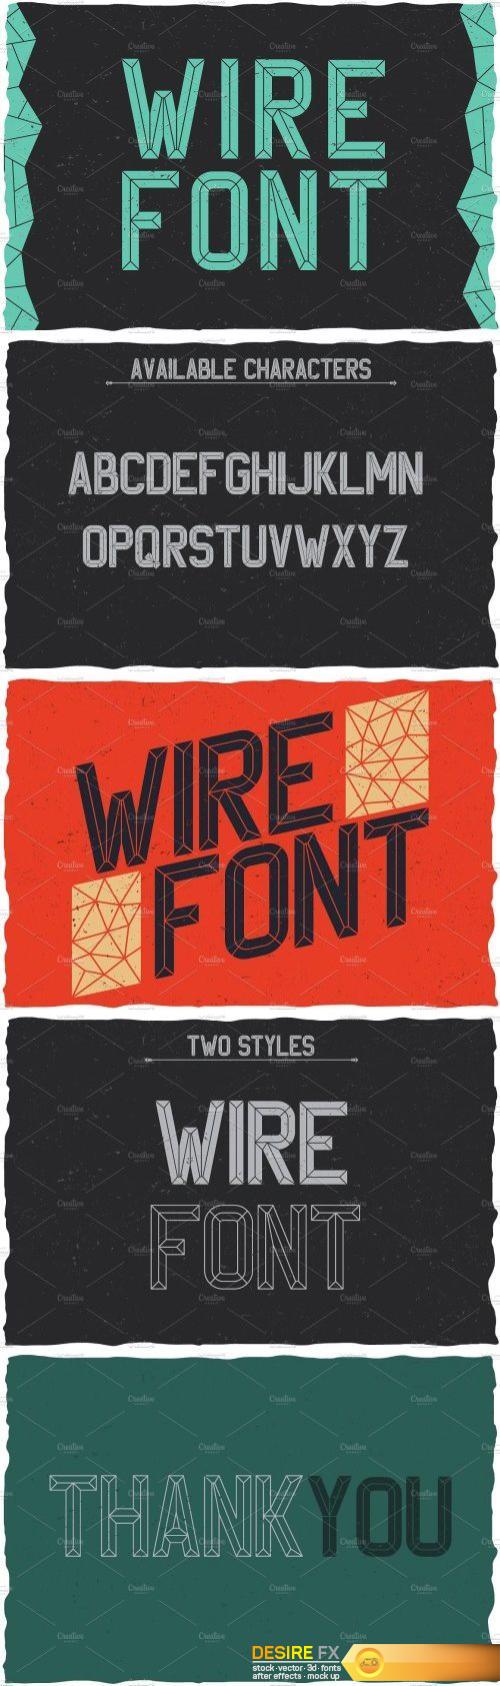 CM - WireFont Vintage Label Typeface 1578068